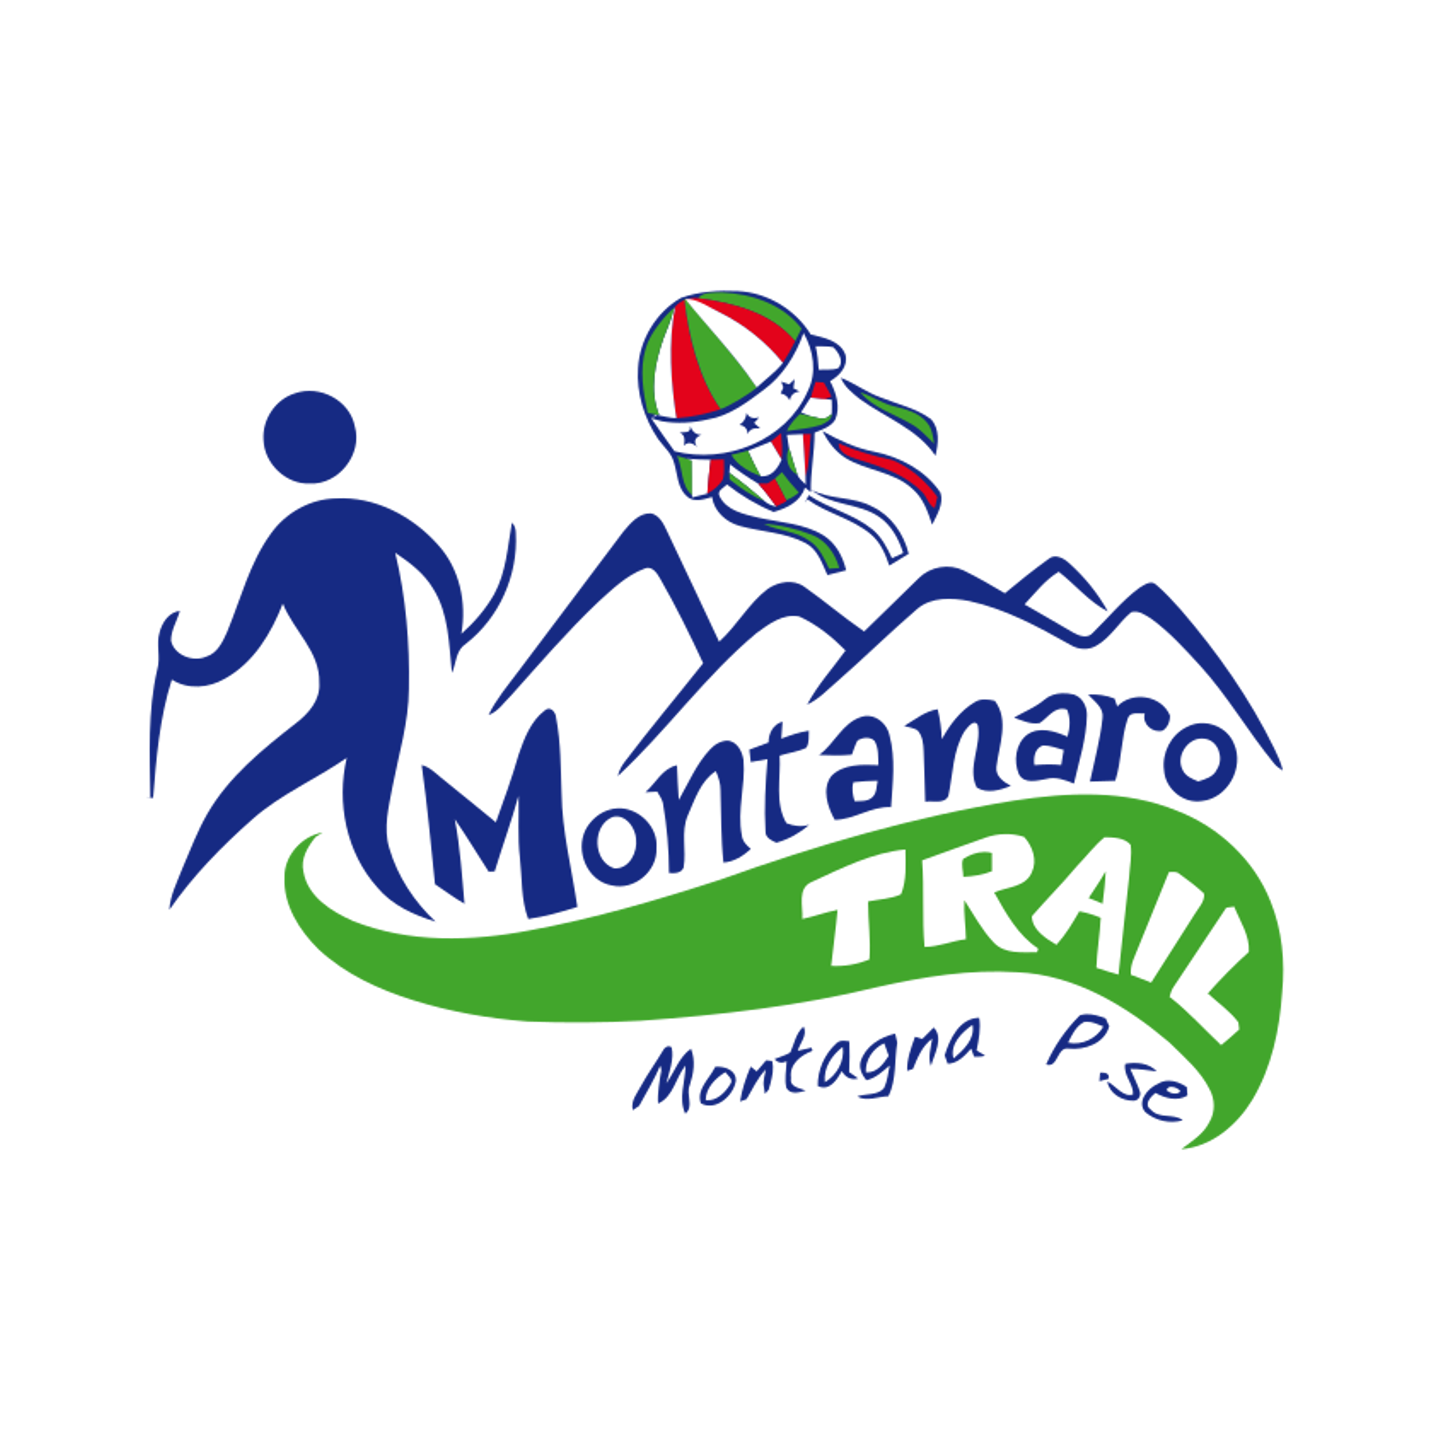 Logo-Montanaro-Trail